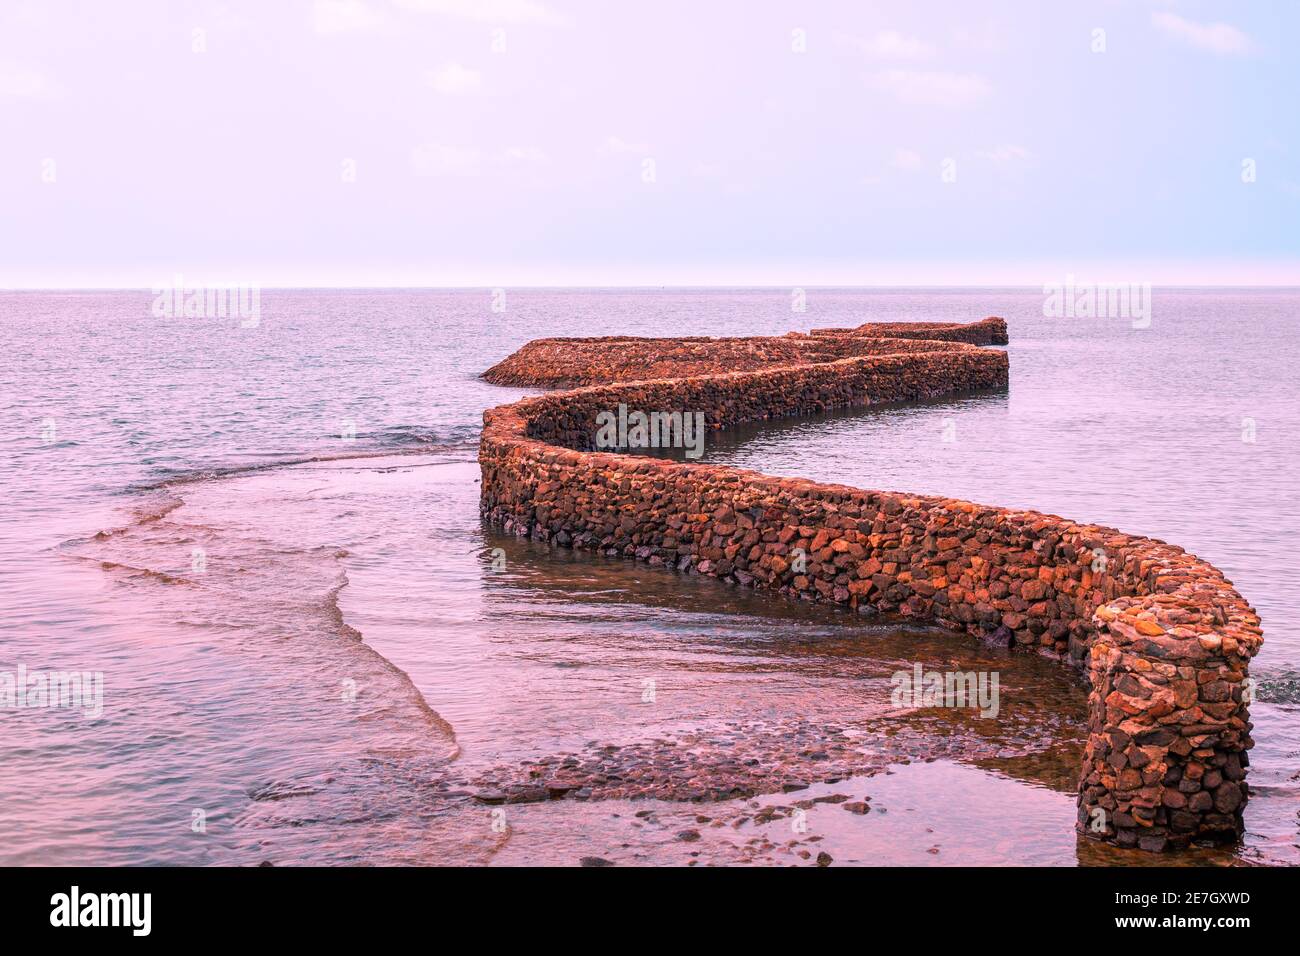 Die Steininstallation in Form einer kurvenreichen Linie geht ins Meer, lila Tönung. Ruhige Meereslandschaft. Rest in Asien. Stockfoto